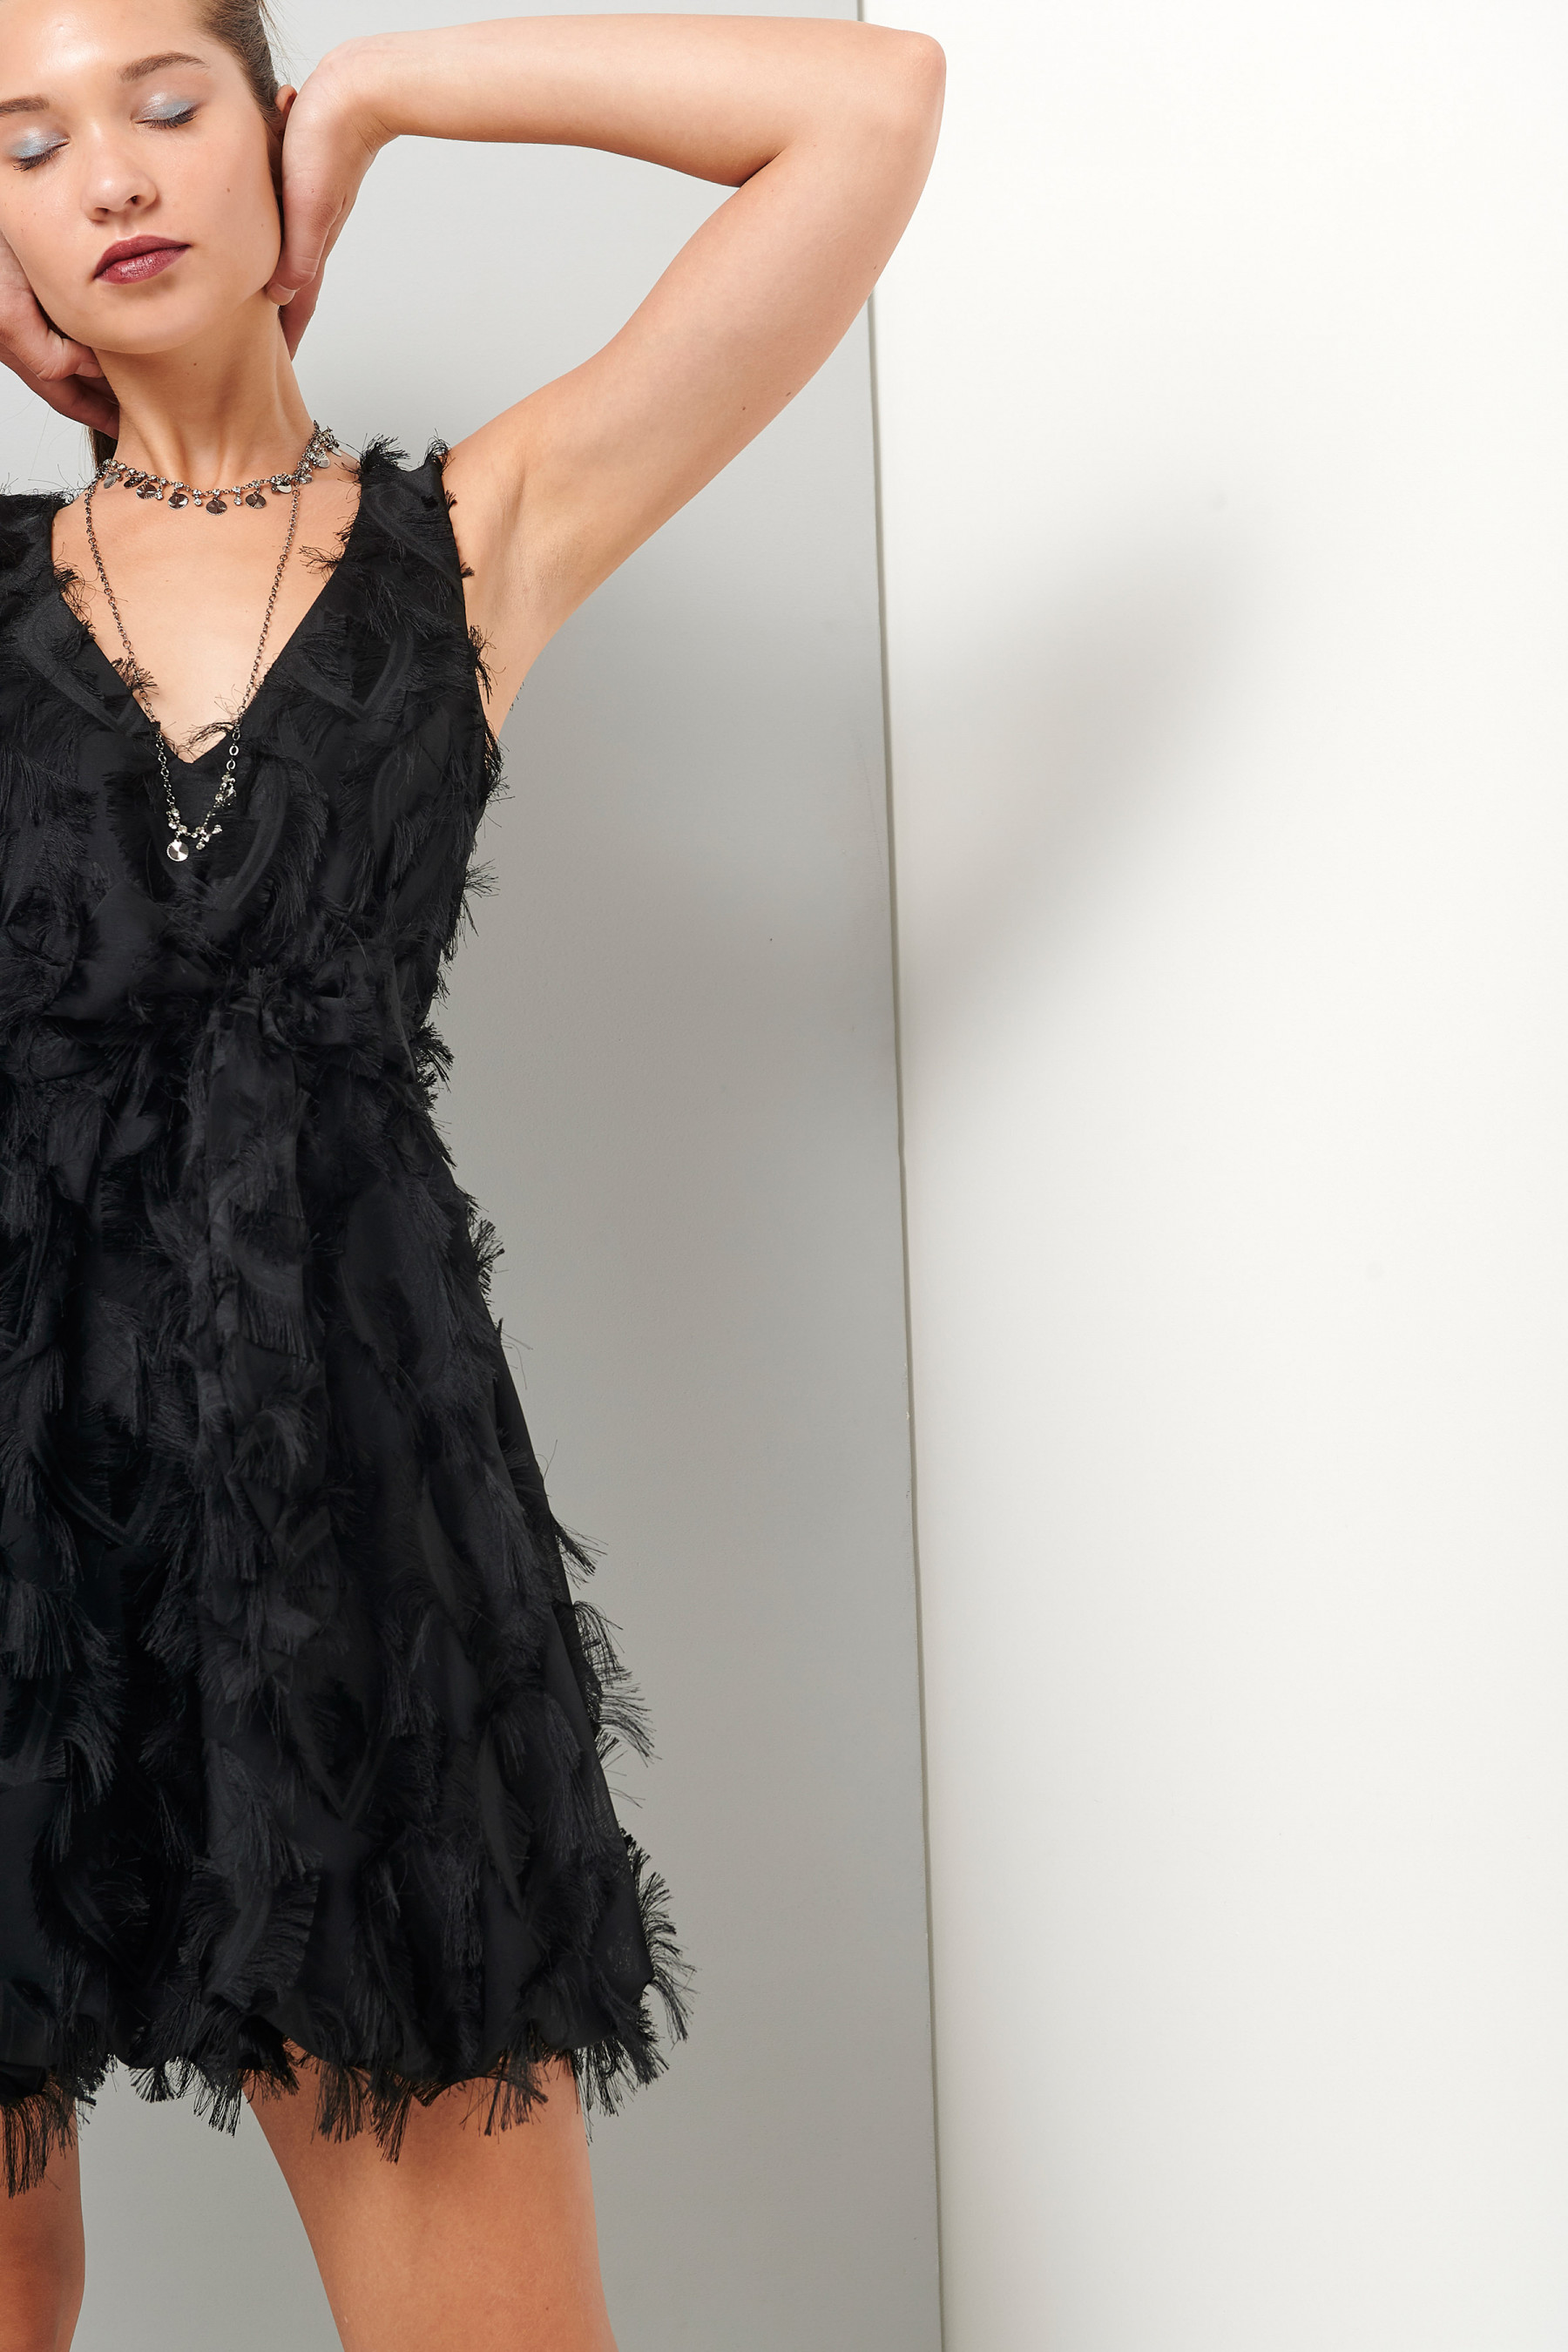 New Year, New Me! 12 φορέματα για να εντυπωσιάσεις στο Ρεβεγιόν της Πρωτοχρονιάς